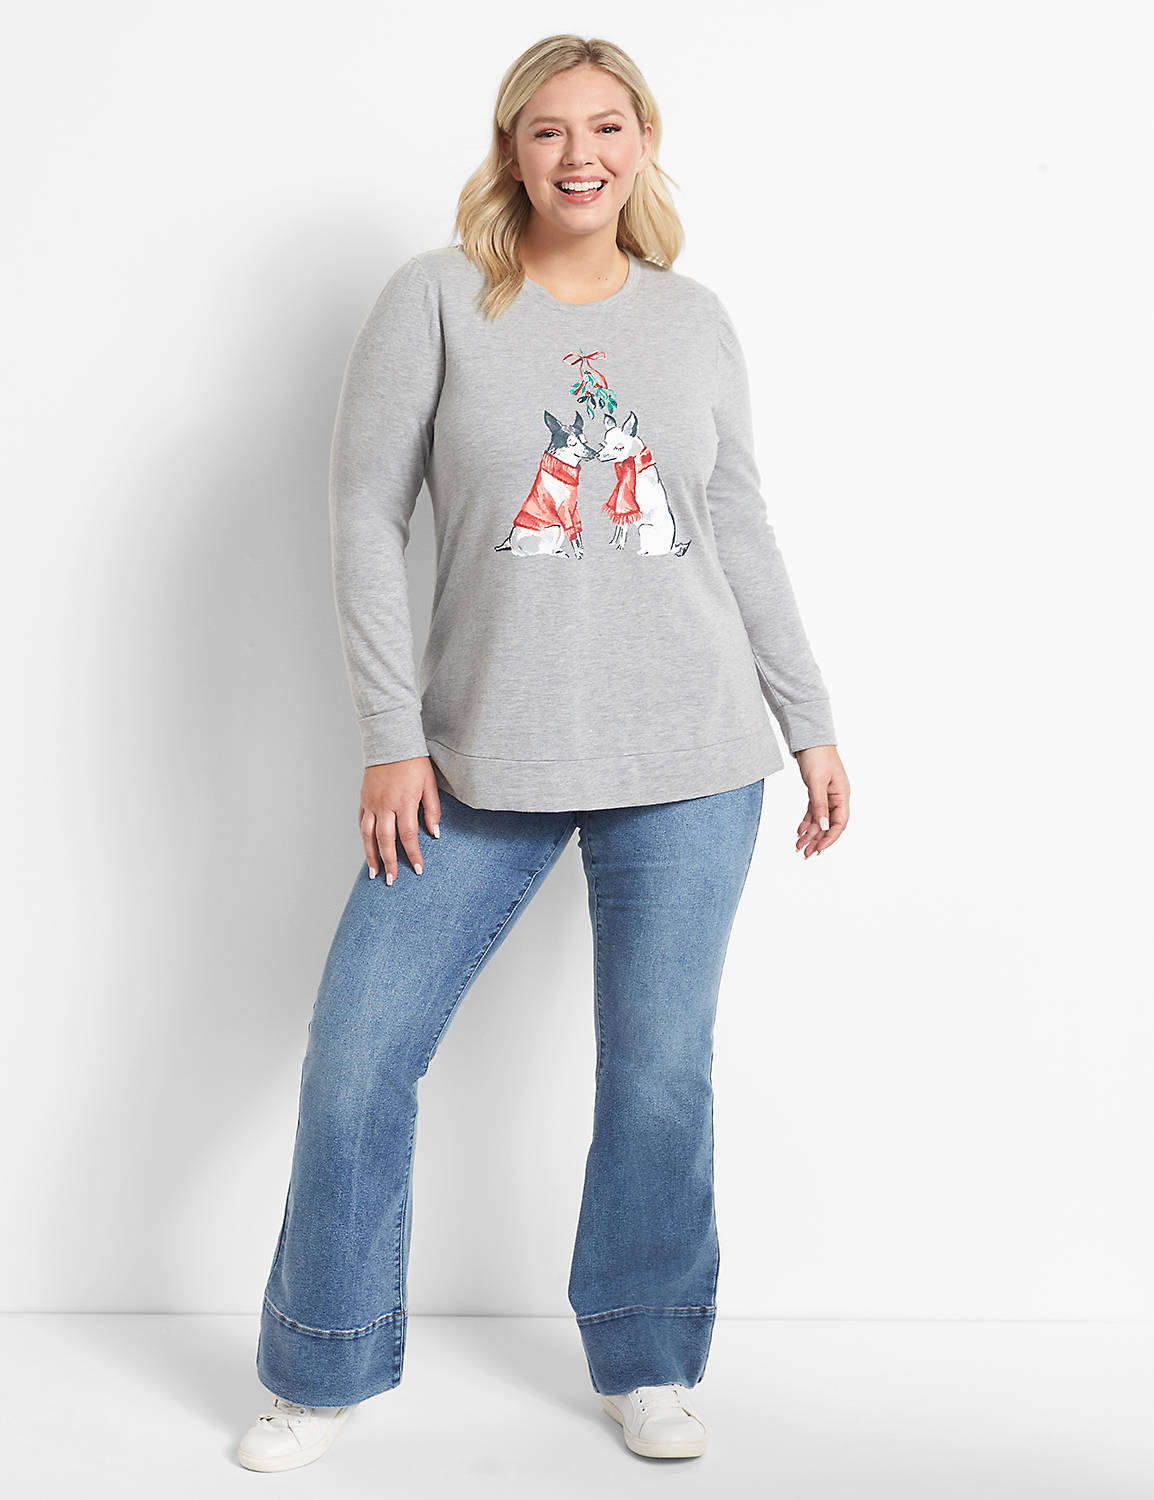 Holiday Dog Graphic Sweatshirt Product Image 3